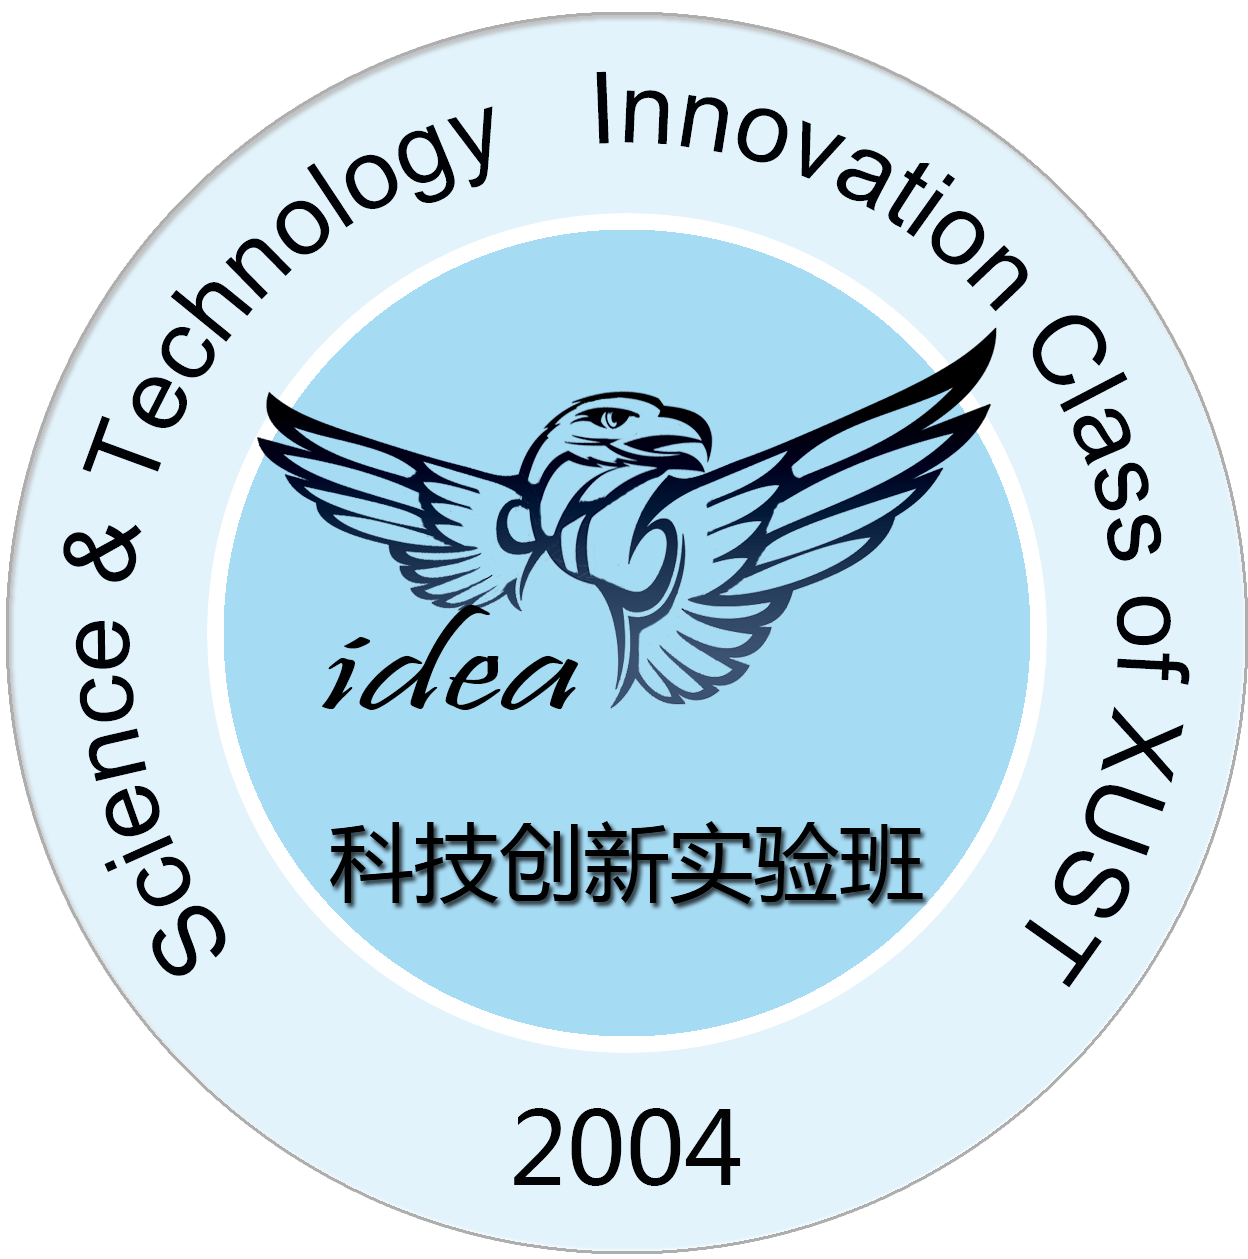 科技創新實驗室(西安科技大學校級科技創新實驗室)